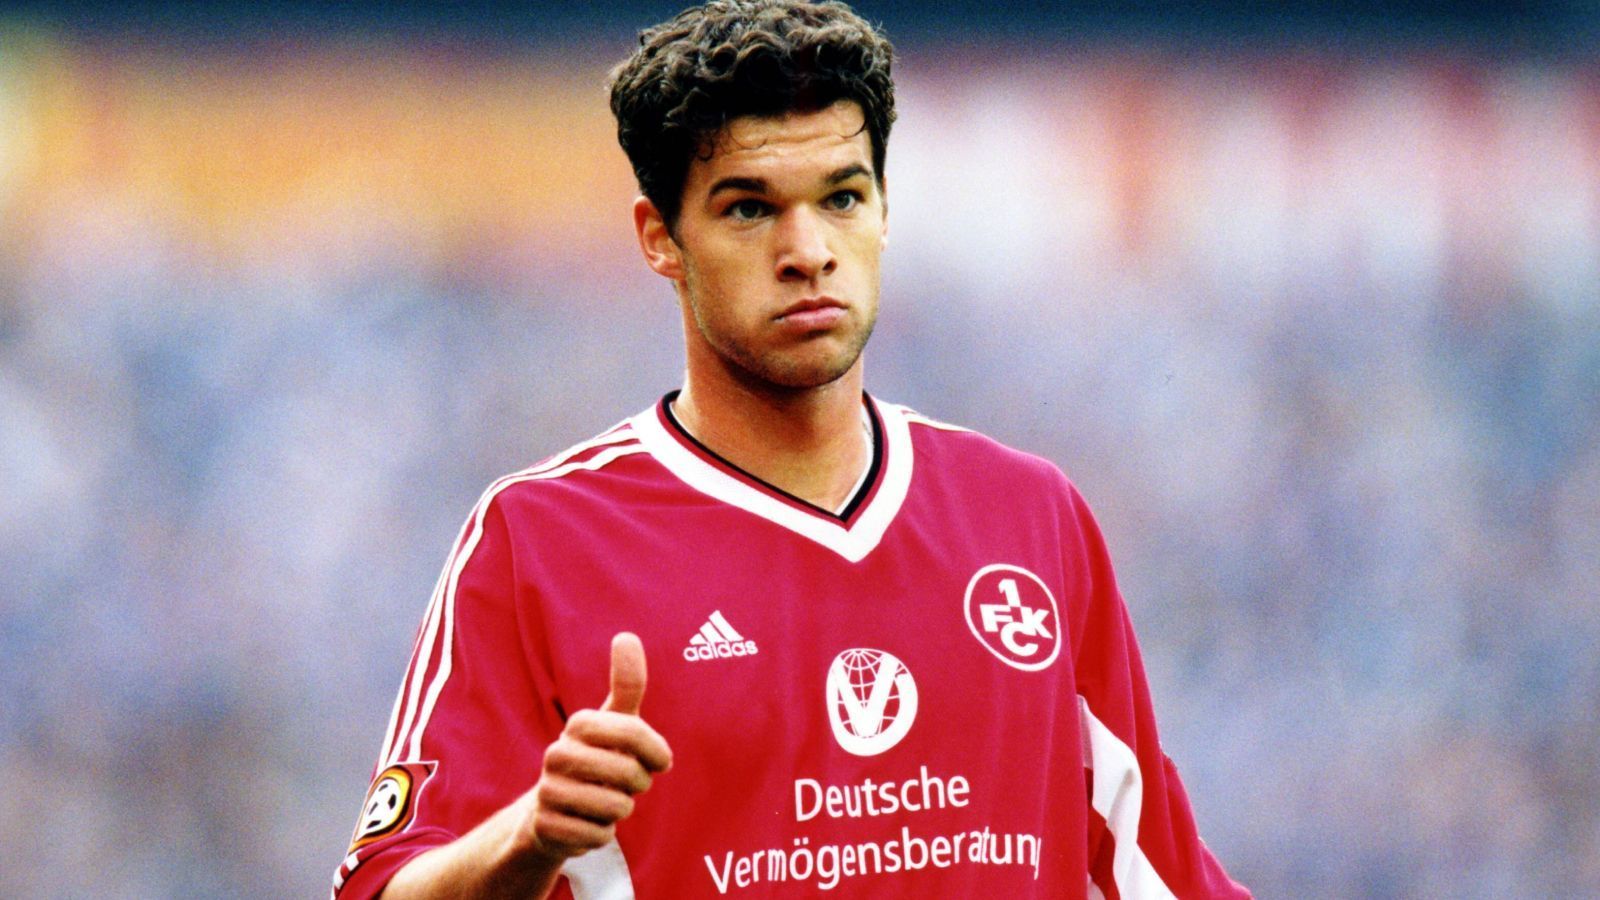 
                <strong>Michael Ballack (Vom 1. FC Kaiserslautern zu Bayer 04 Leverkusen)</strong><br>
                Langgezogene Transfer-Sagen sind jedoch kein reines Phänomen der vergangenen Jahre. Auch im Jahr 1999 gab es bereits eine Schlammschlacht um niemand geringeres als den späteren "Capitano" Michael Ballack. In jenem Jahr einigten sich der 1. FC Kaiserslautern und Bayer Leverkusen auf einen Wechsel des damals 23-Jährigen, aber erst im Sommer 2000. Später pochten Leverkusen und Ballack auf einen vorzeitigen Wechsel, Lautern jedoch lehnte ab und drohte Ballack gar mit der Tribüne. "Das können die nicht machen, das wäre ja wie Viehhandel", wird Ballack seinerzeit zitiert. Am Ende waren acht Millionen Deutsche Mark (rund vier Millionen Euro) aus Leverkusen genug, um Kaiserslautern von einer vorzeitigen Freigabe zu überzeugen.
              